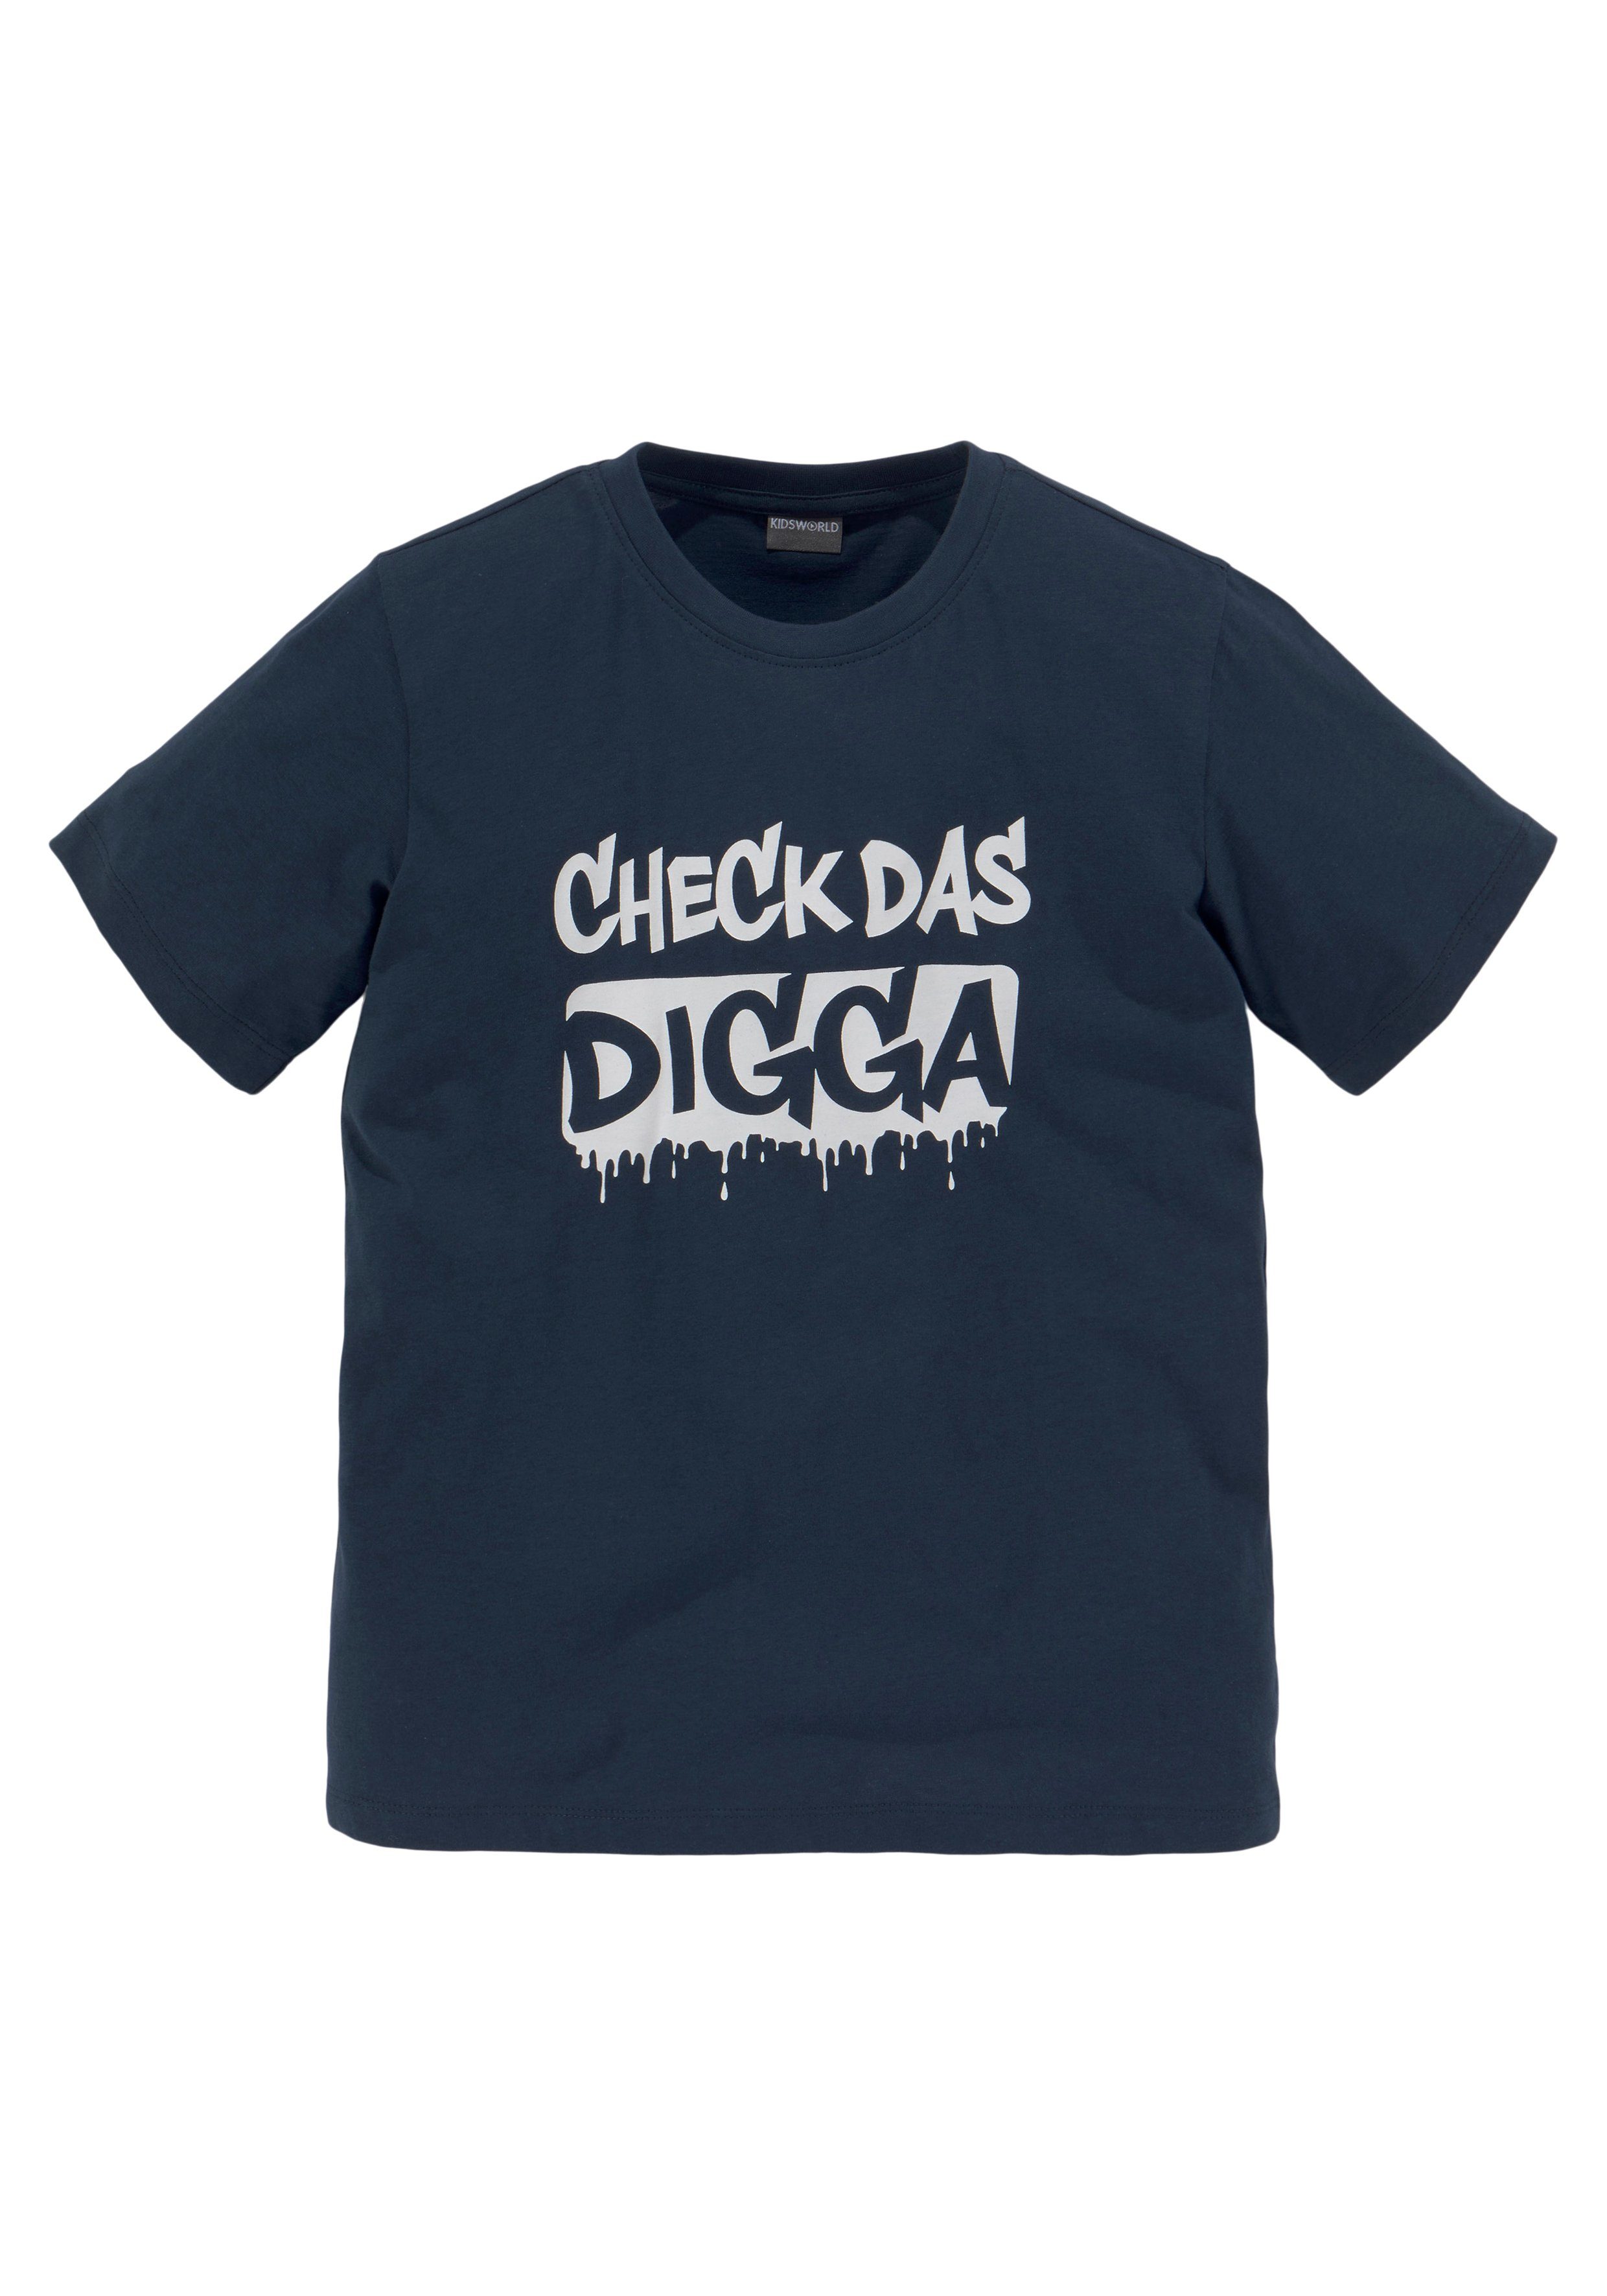 CHECK KIDSWORLD Sprücheshirt DAS Jungen für DIGGA T-Shirt